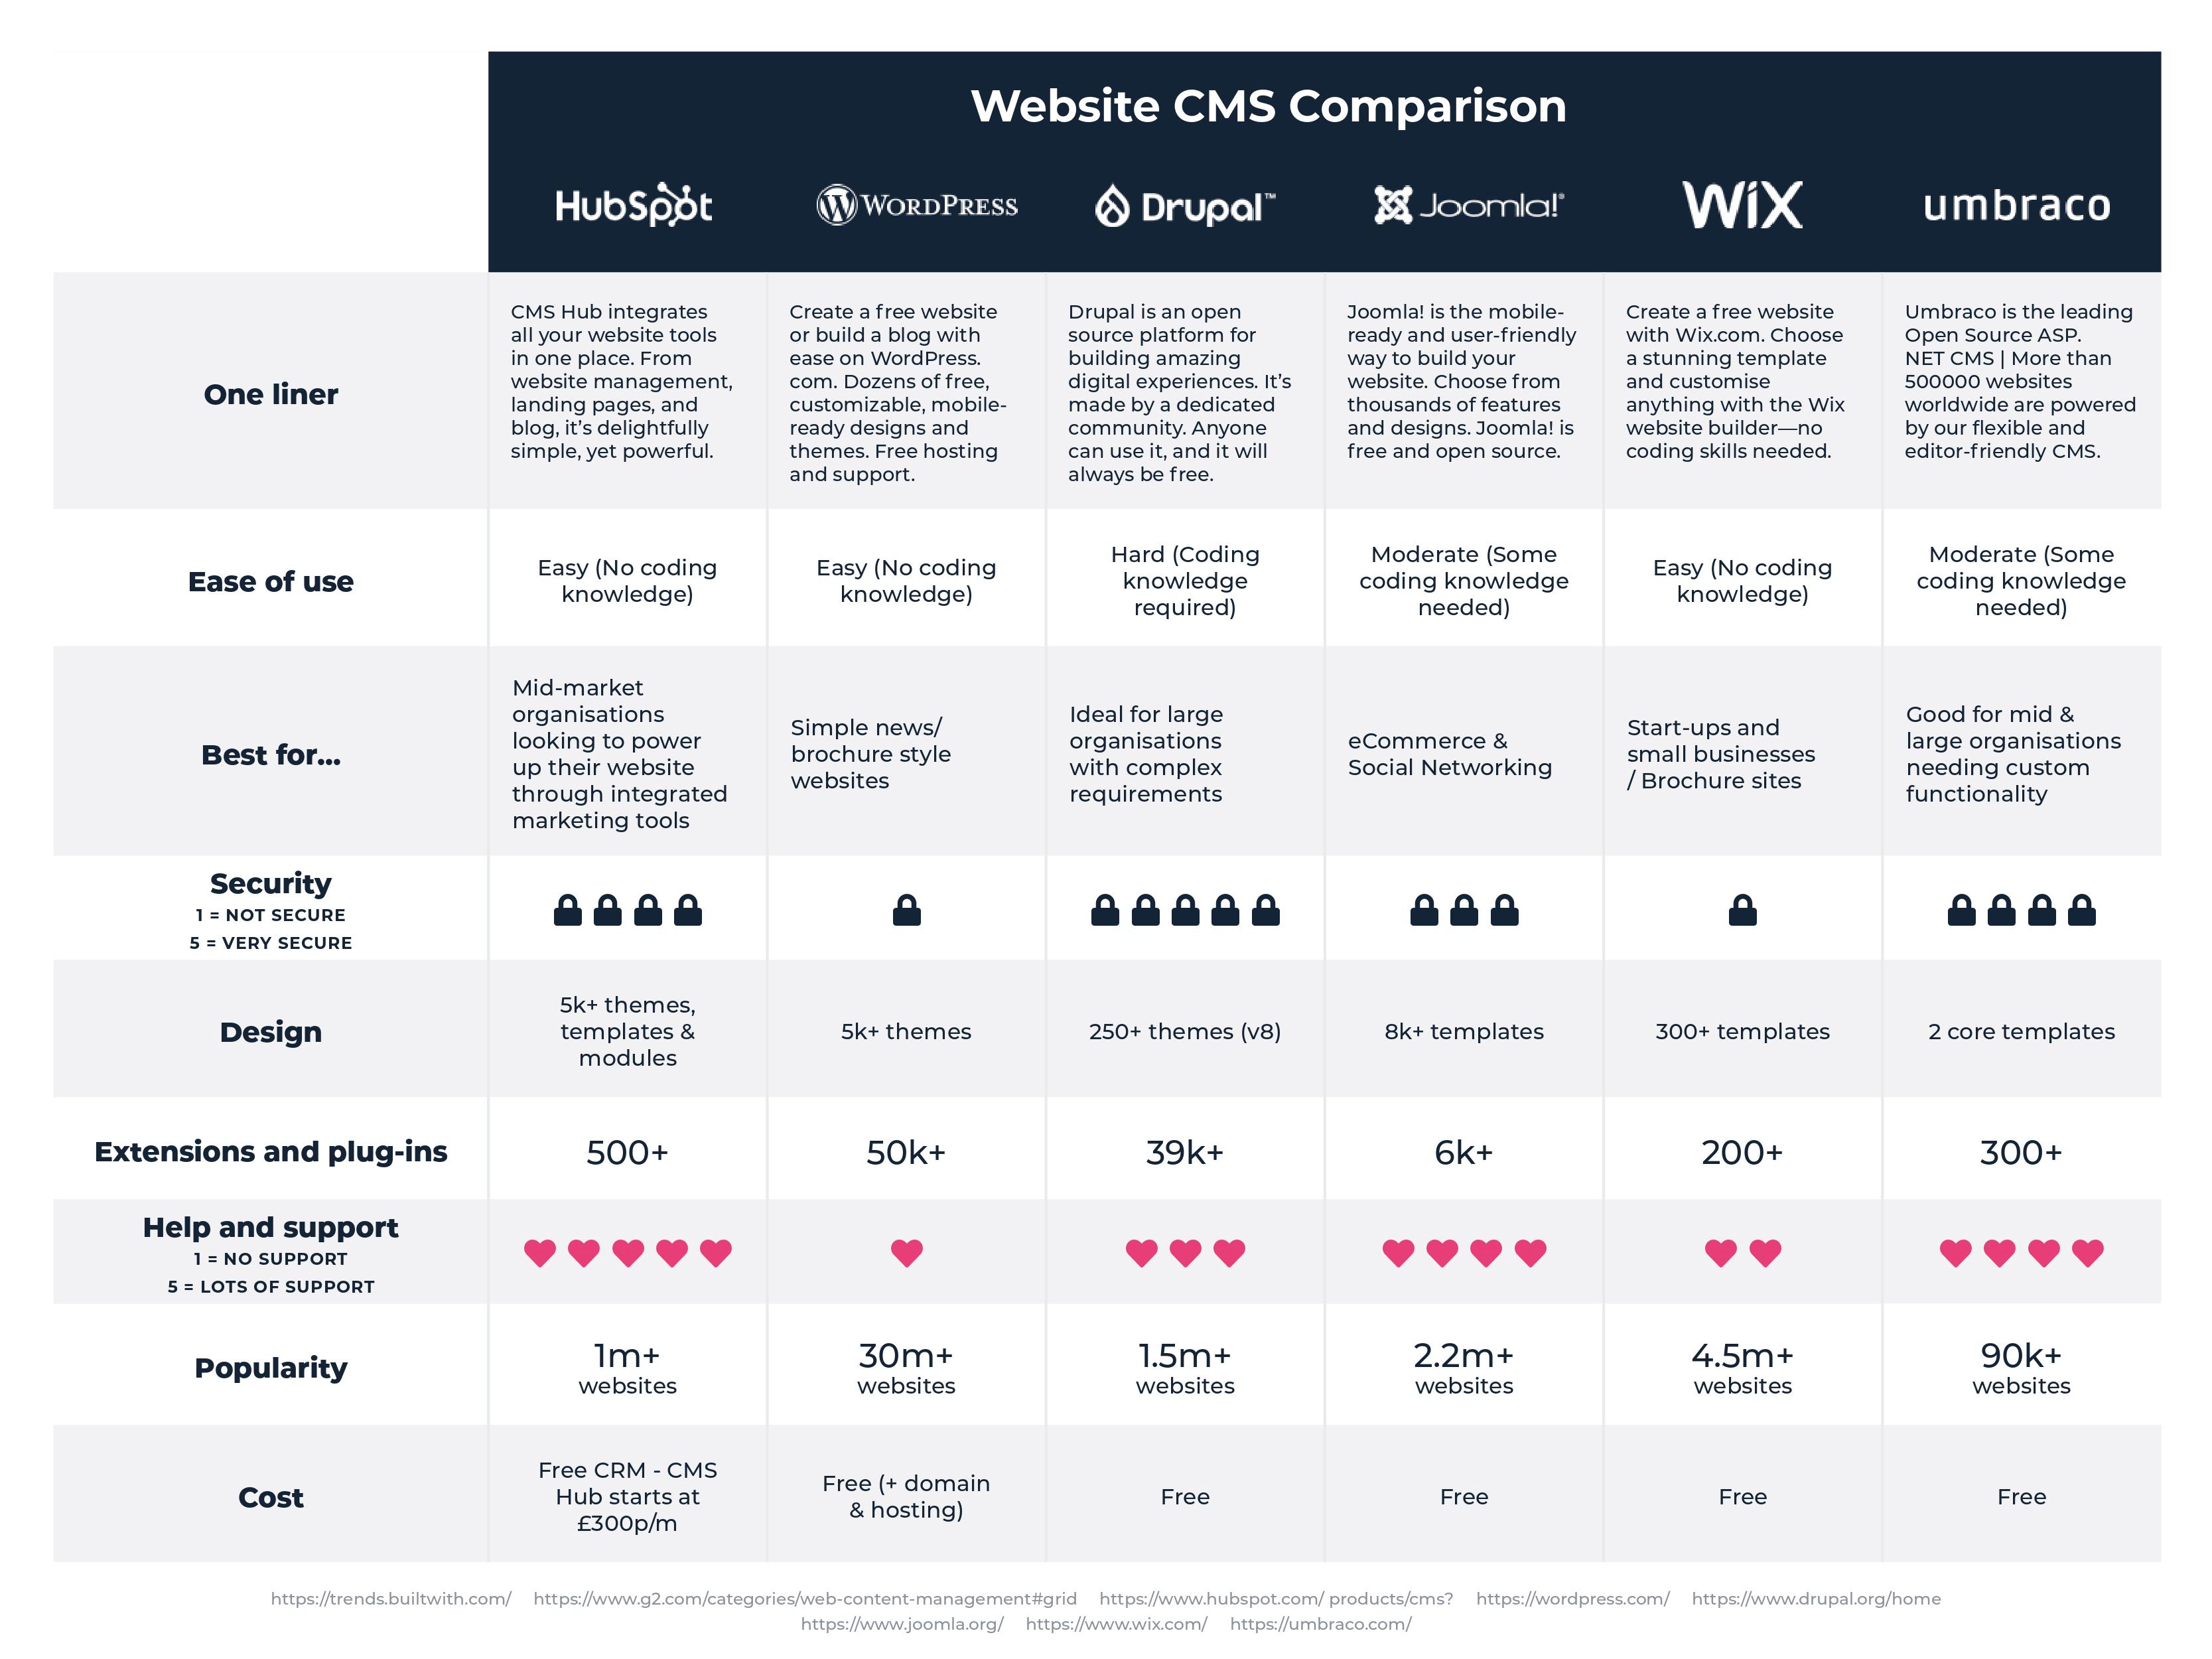 Web CMS Comparison Asset v2